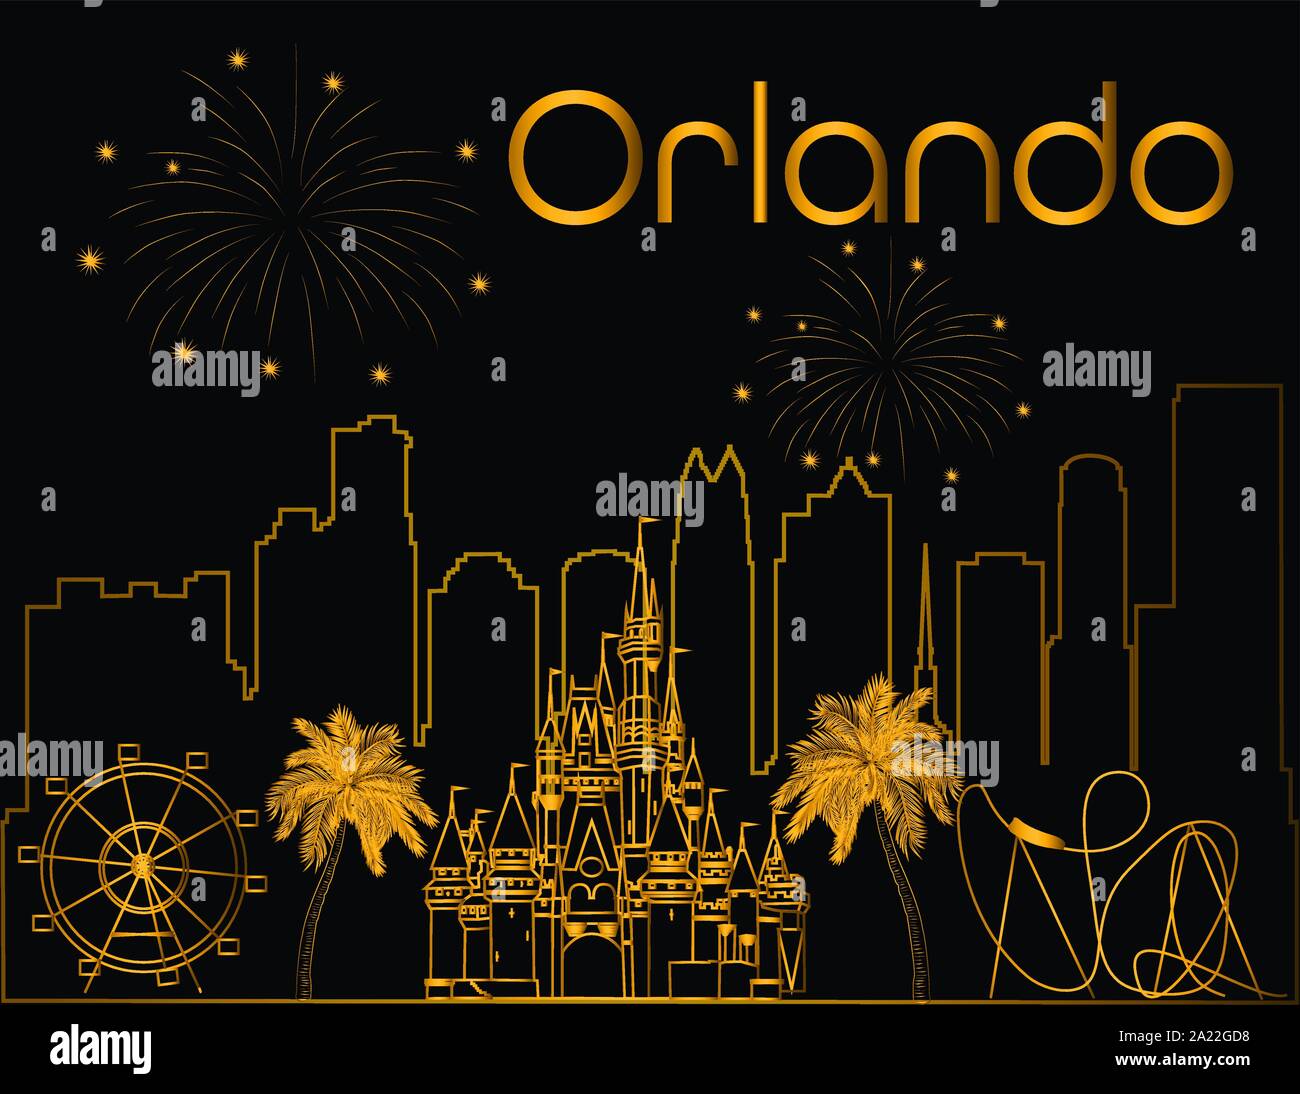 Orlando gold Schriftzug auf schwarzem Hintergrund. Vektor mit Wolkenkratzer, Reisen Symbole und Feuerwerk. Reisen Postkarte. Stock Vektor